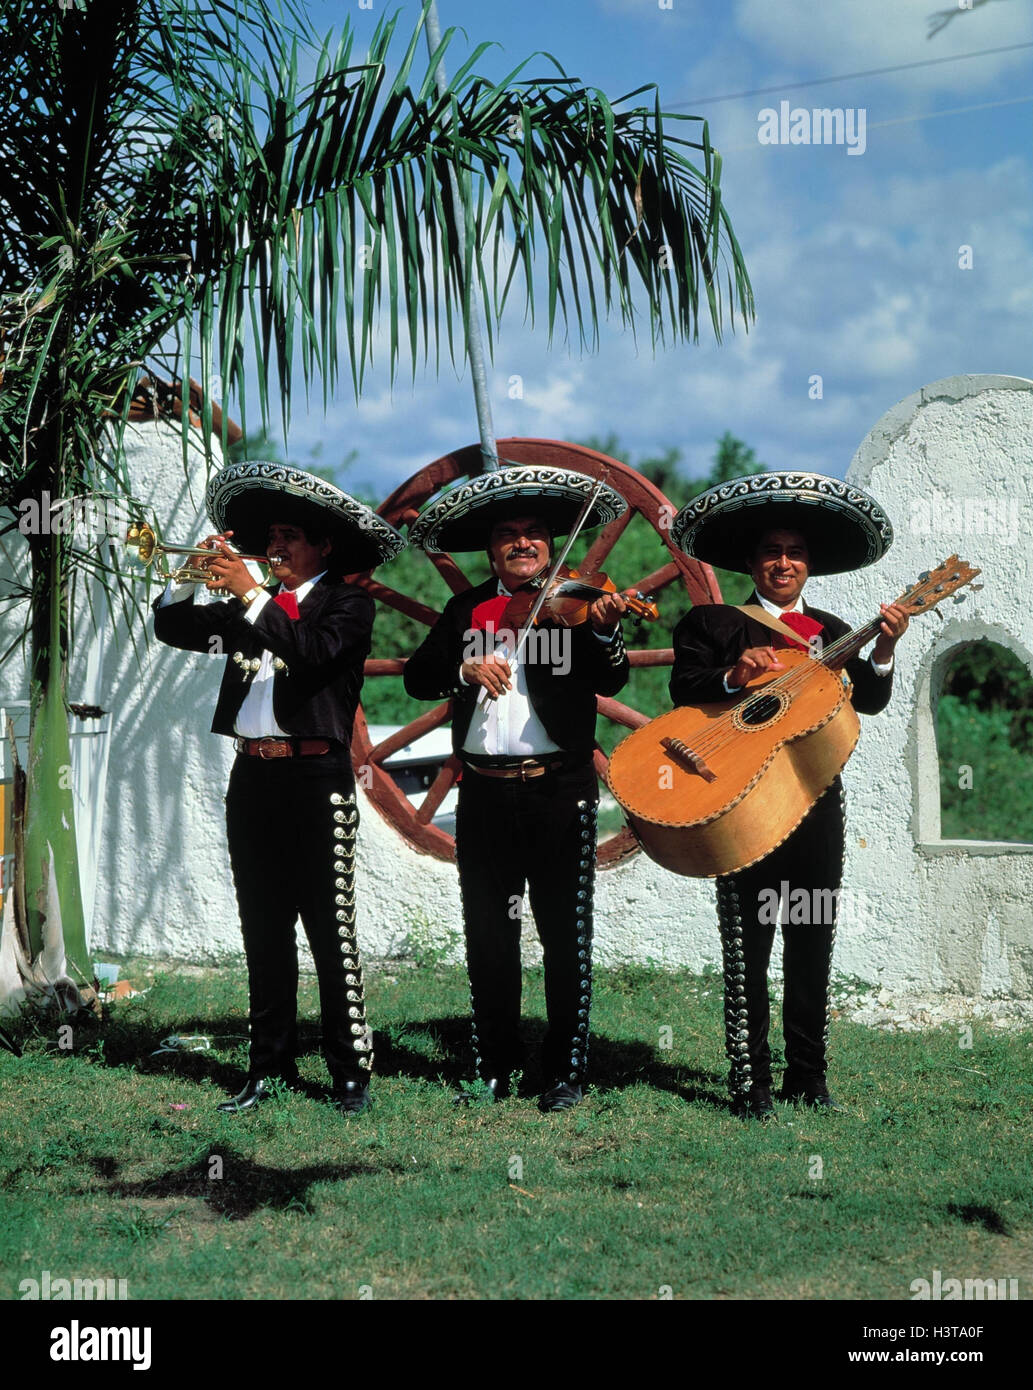 Mexico Folklore Mariachi Musician Music Musician Mariachi